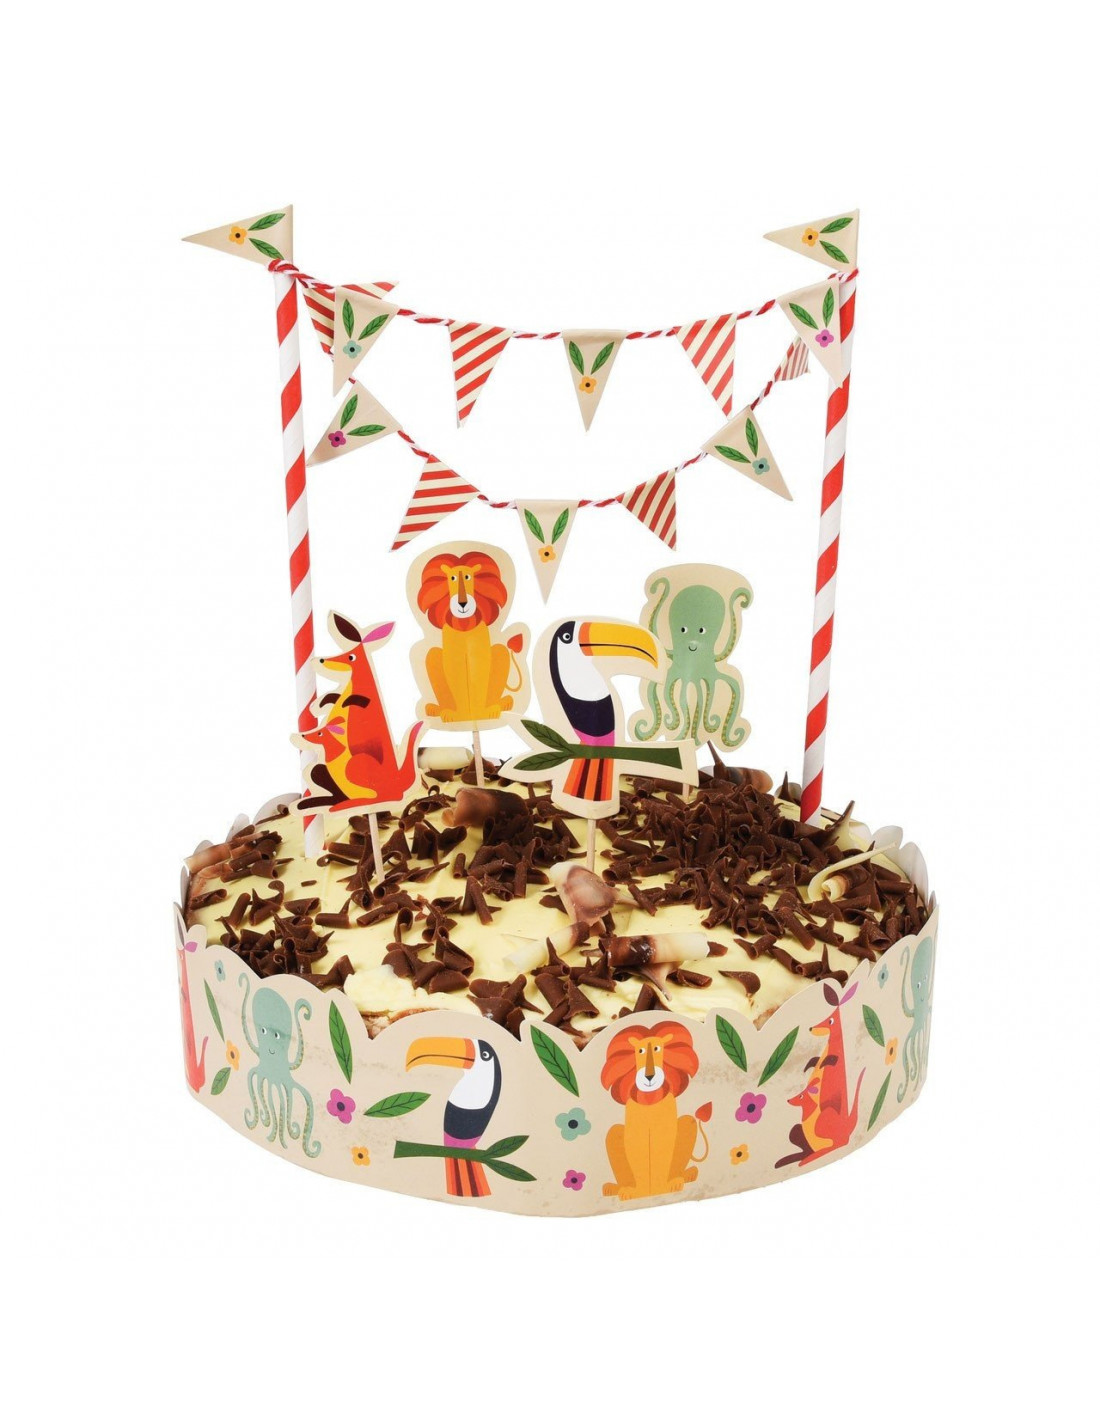 Gâteau d'anniversaire en bois - Corolle